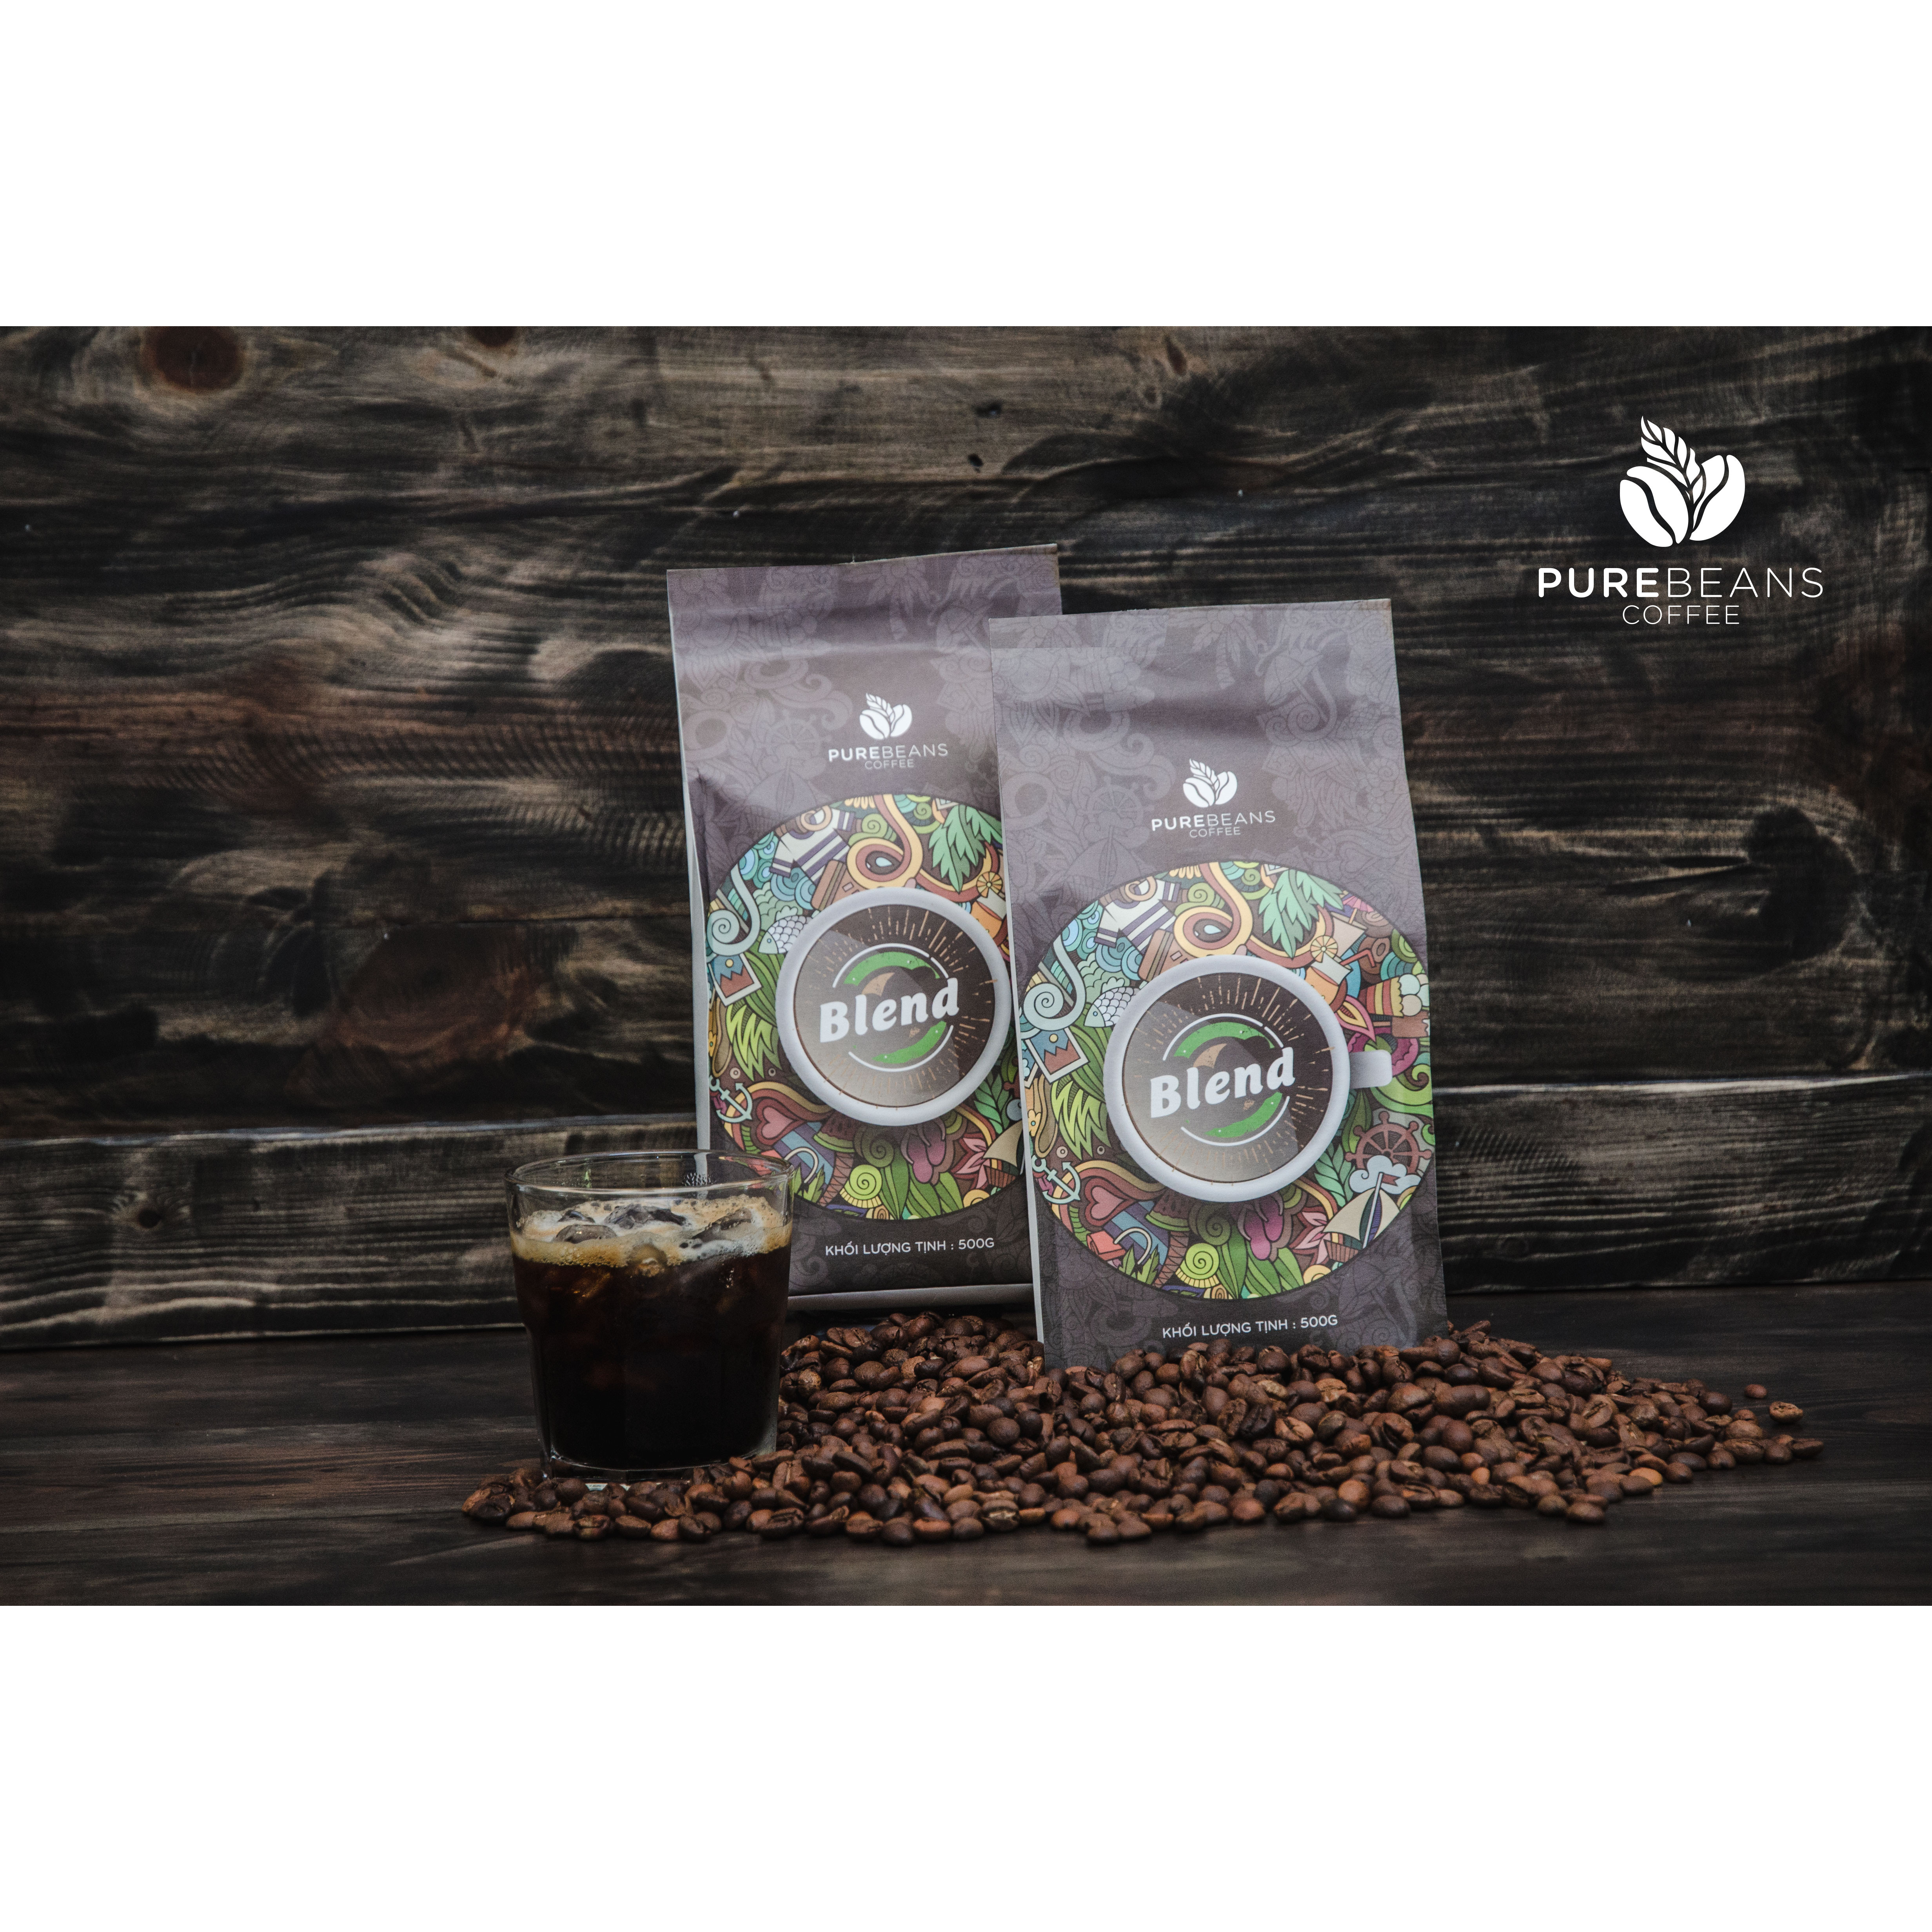 Cà Phê PureBeans Blend Sự kết hợp độc đáo giữa 30% hạt cà phê Arabica và 70% hạt cà phê Robusta sạch, rang mộc và nguyên chất tạo nên hương mạnh mẽ, vị êm dịu của những hạt cà phê đặc sản tạo nên một hương vị rất khác so với cà phê theo phong cách Việt